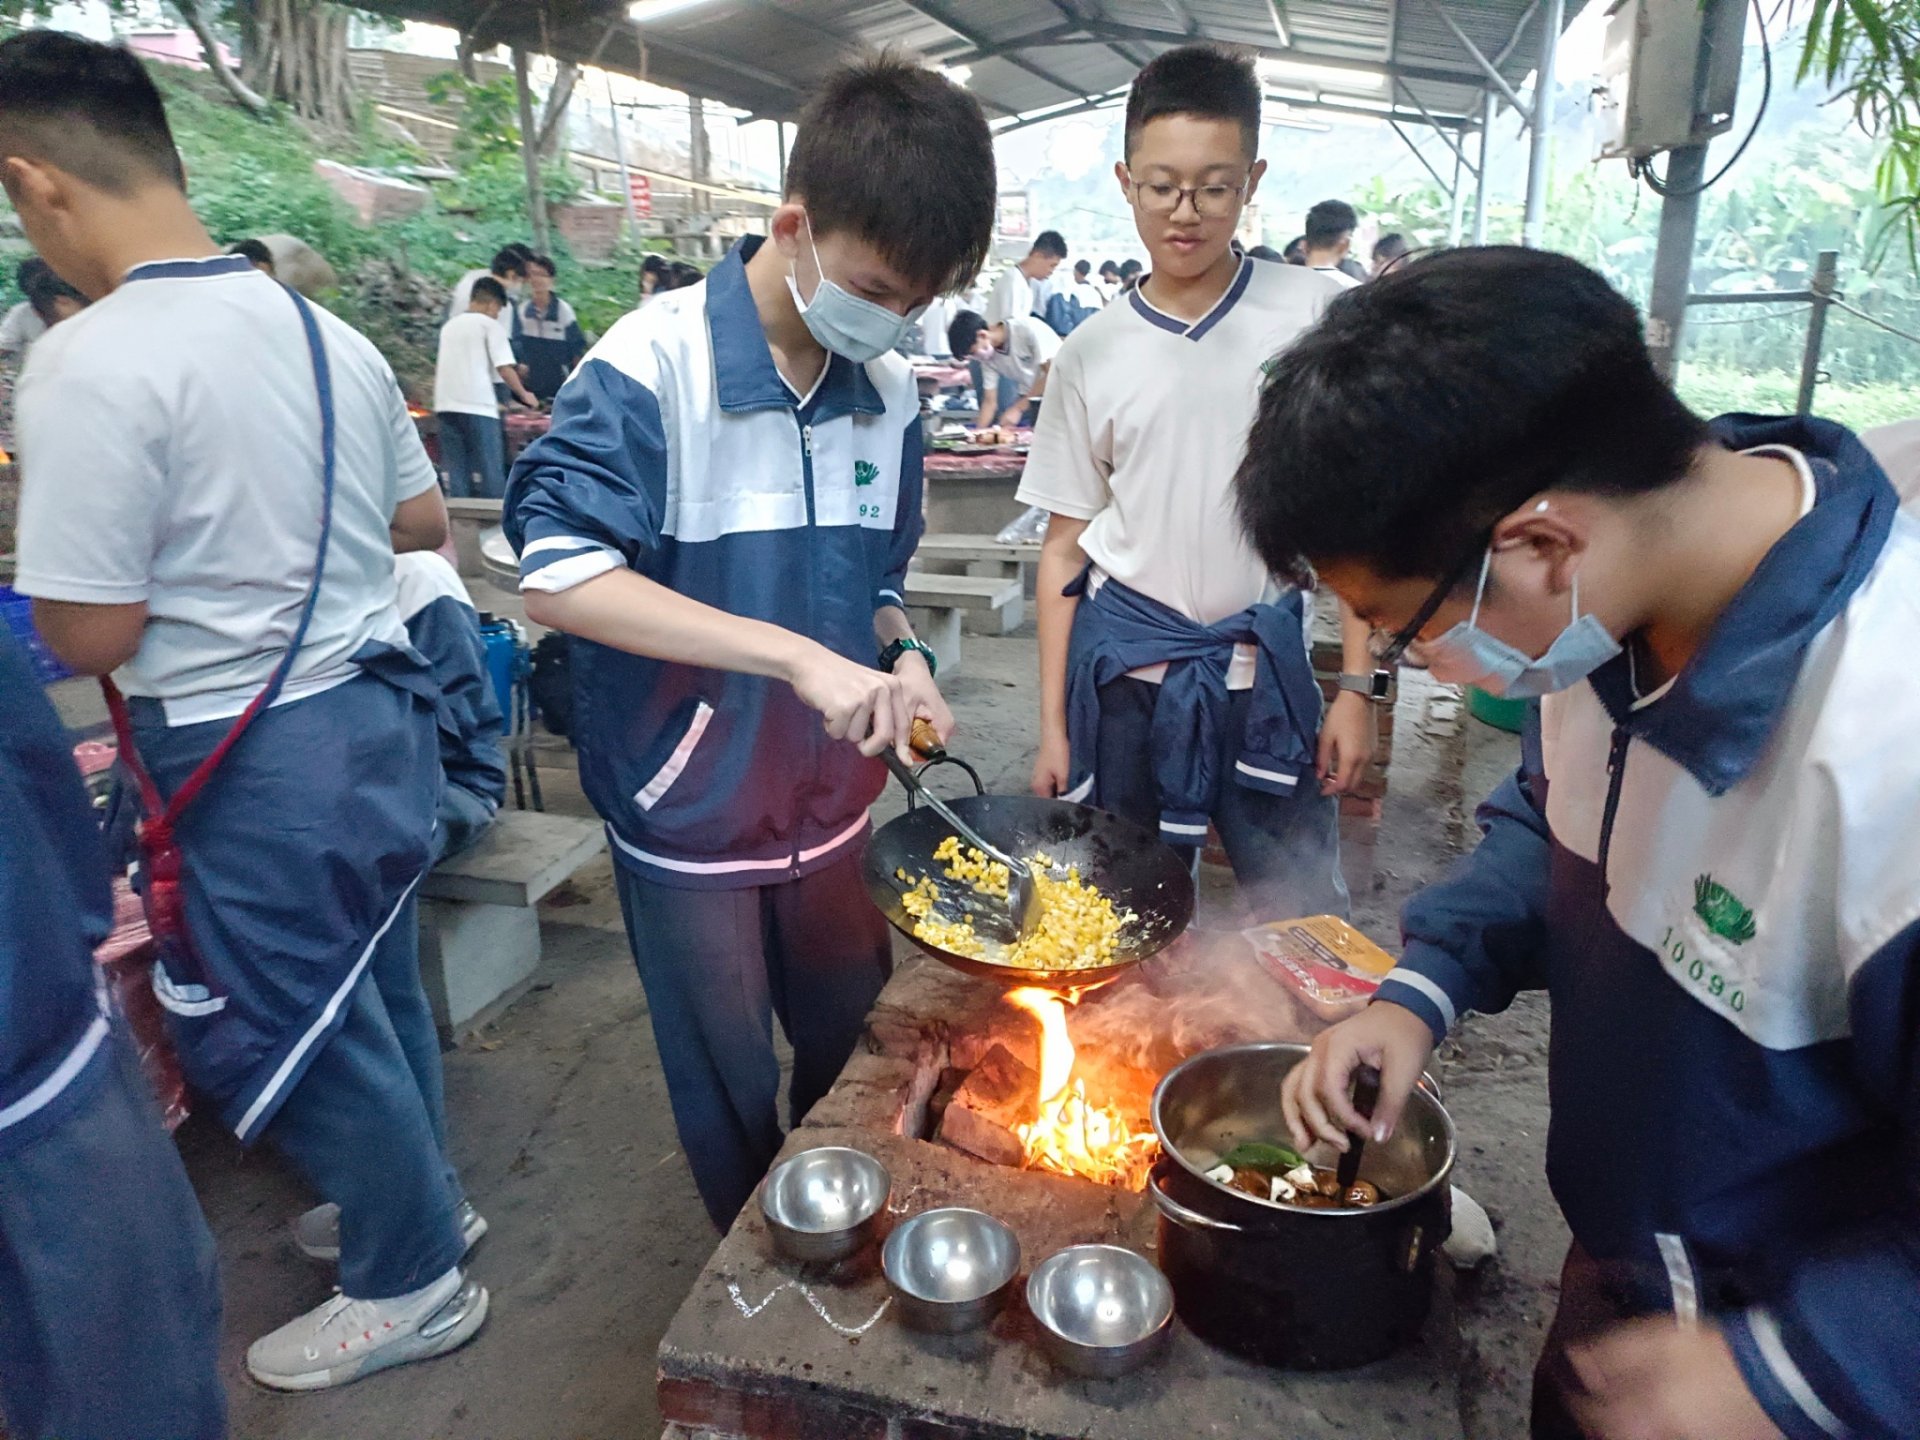 宿營野炊中體驗生火煮飯的不易。